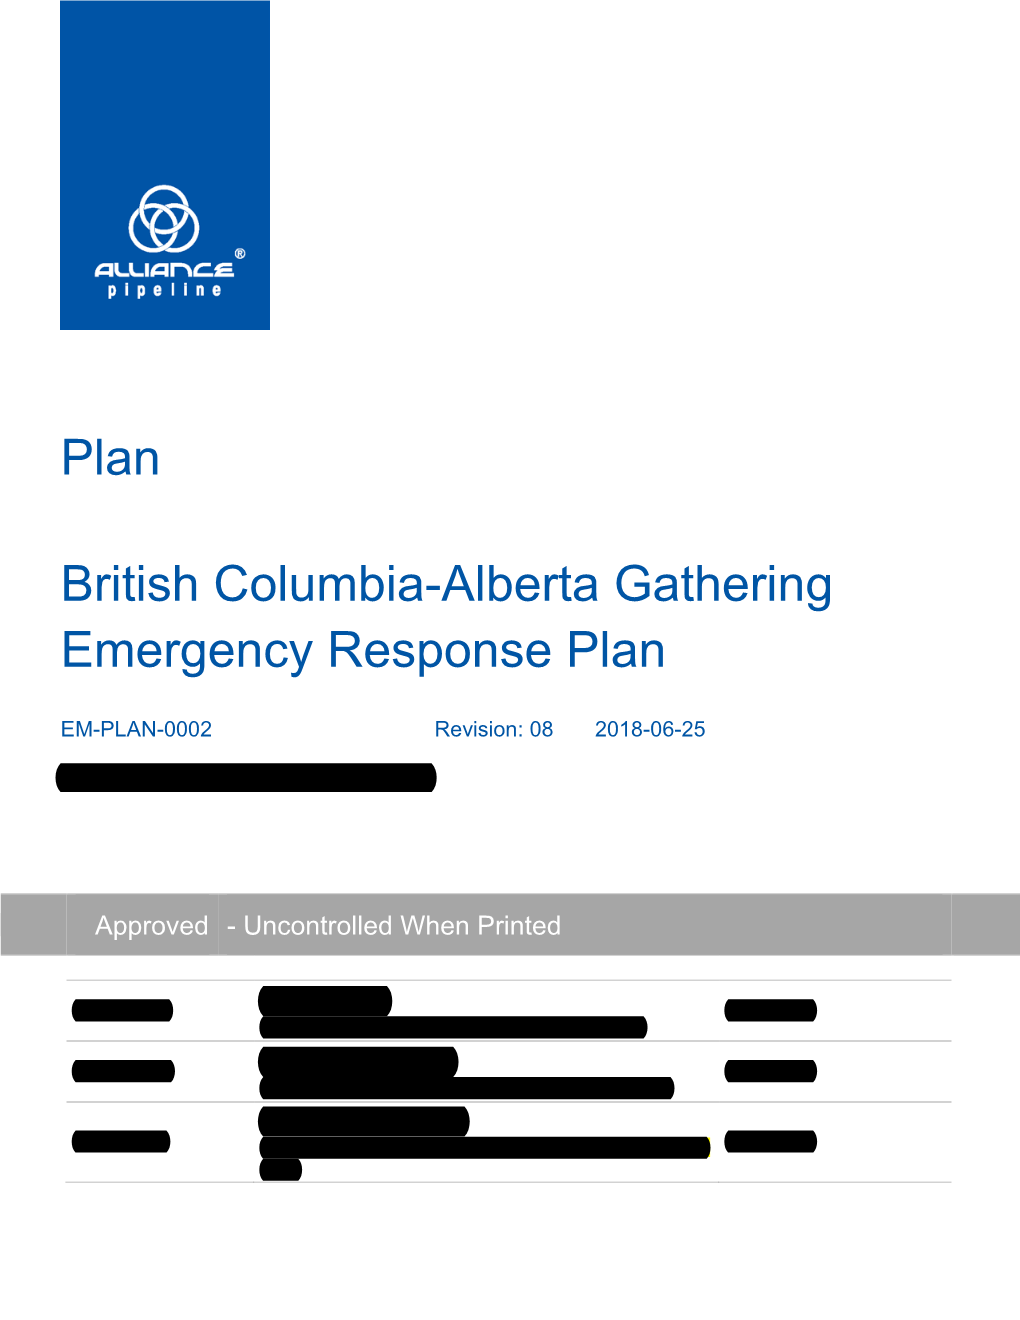 British Columbia-Alberta Gathering Emergency Response Plan